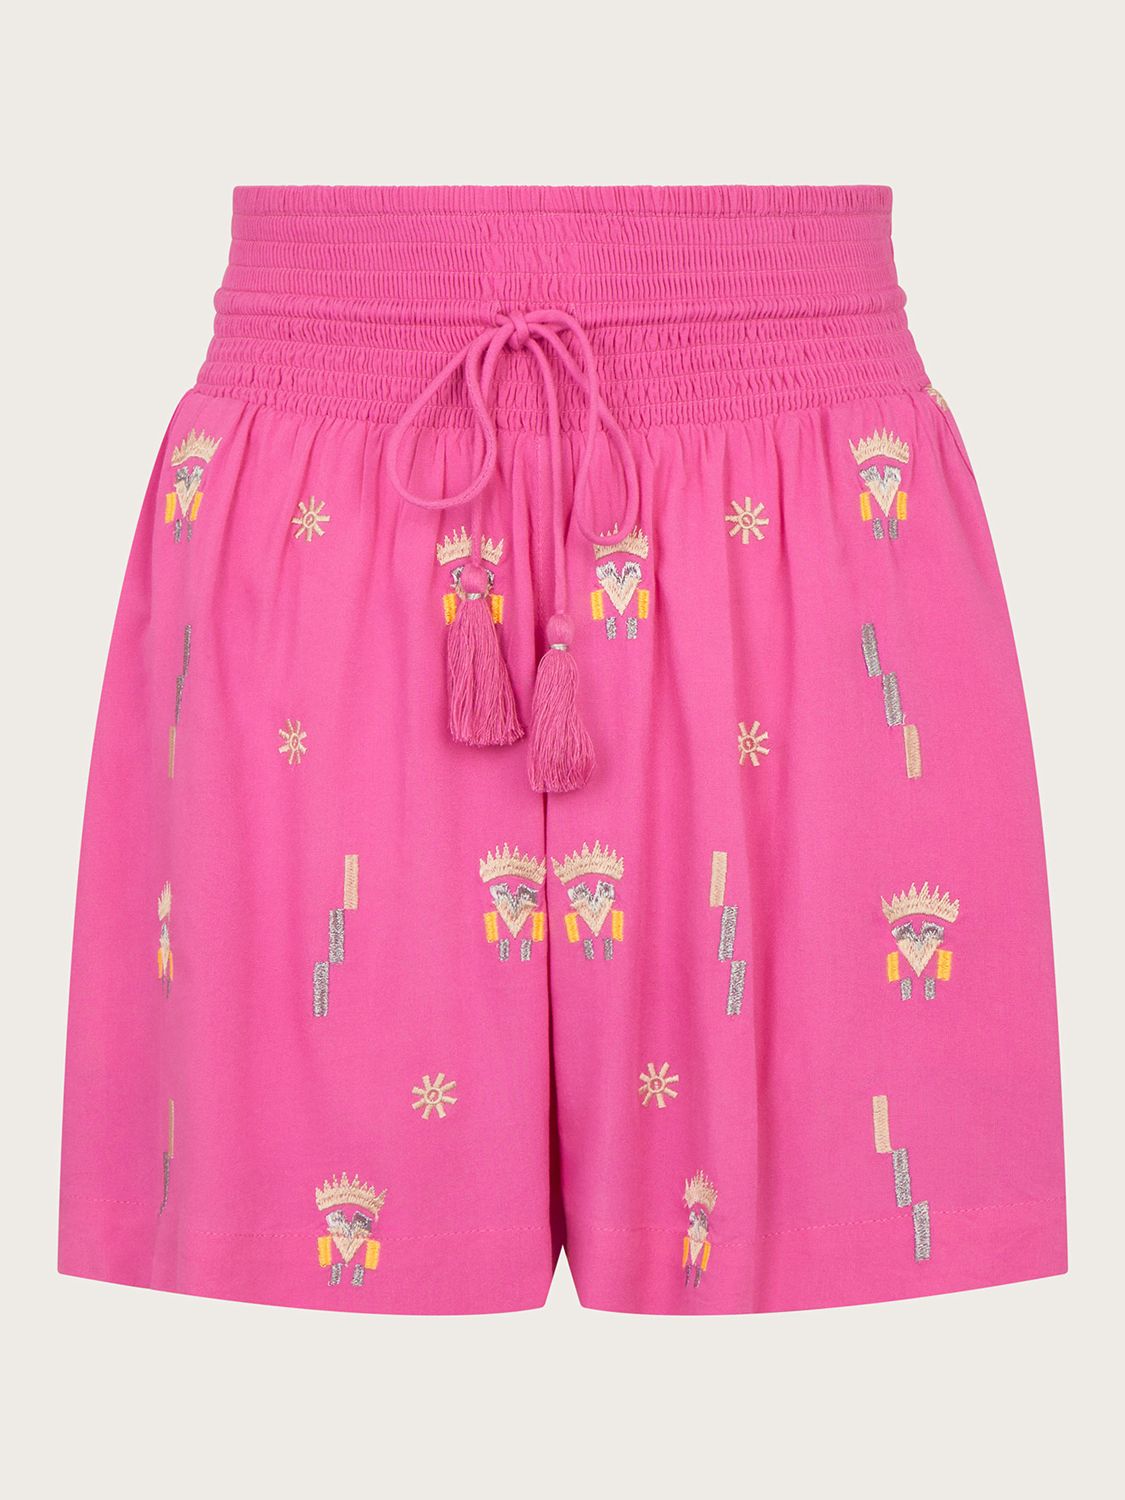 Monsoon Kiran Embroided Shorts, Pink, S